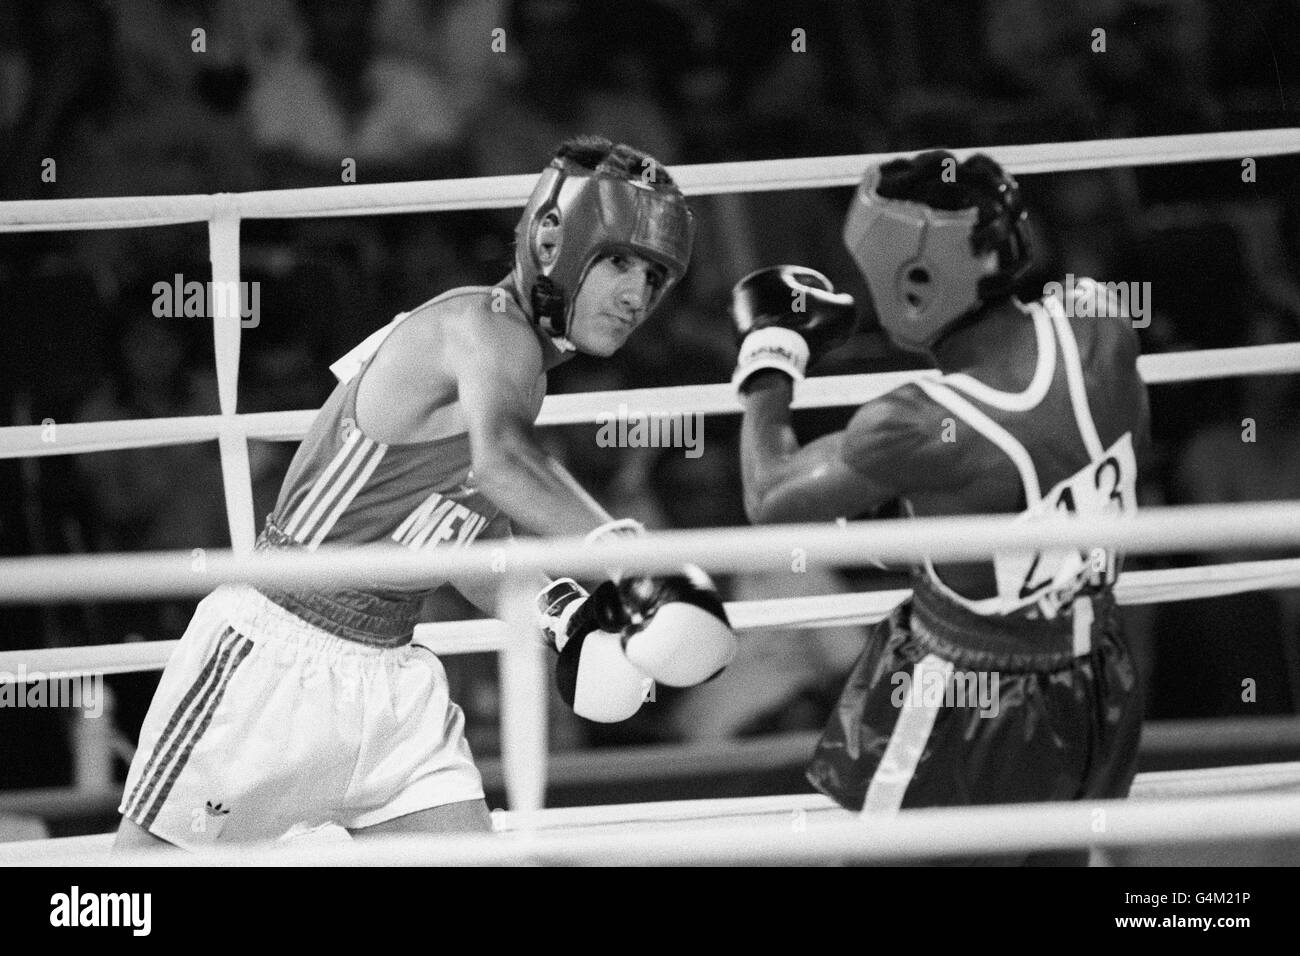 Boxen - Los Angeles Olympischen Spiele - Bantamgewicht - Runde 3 - USA Stockfoto